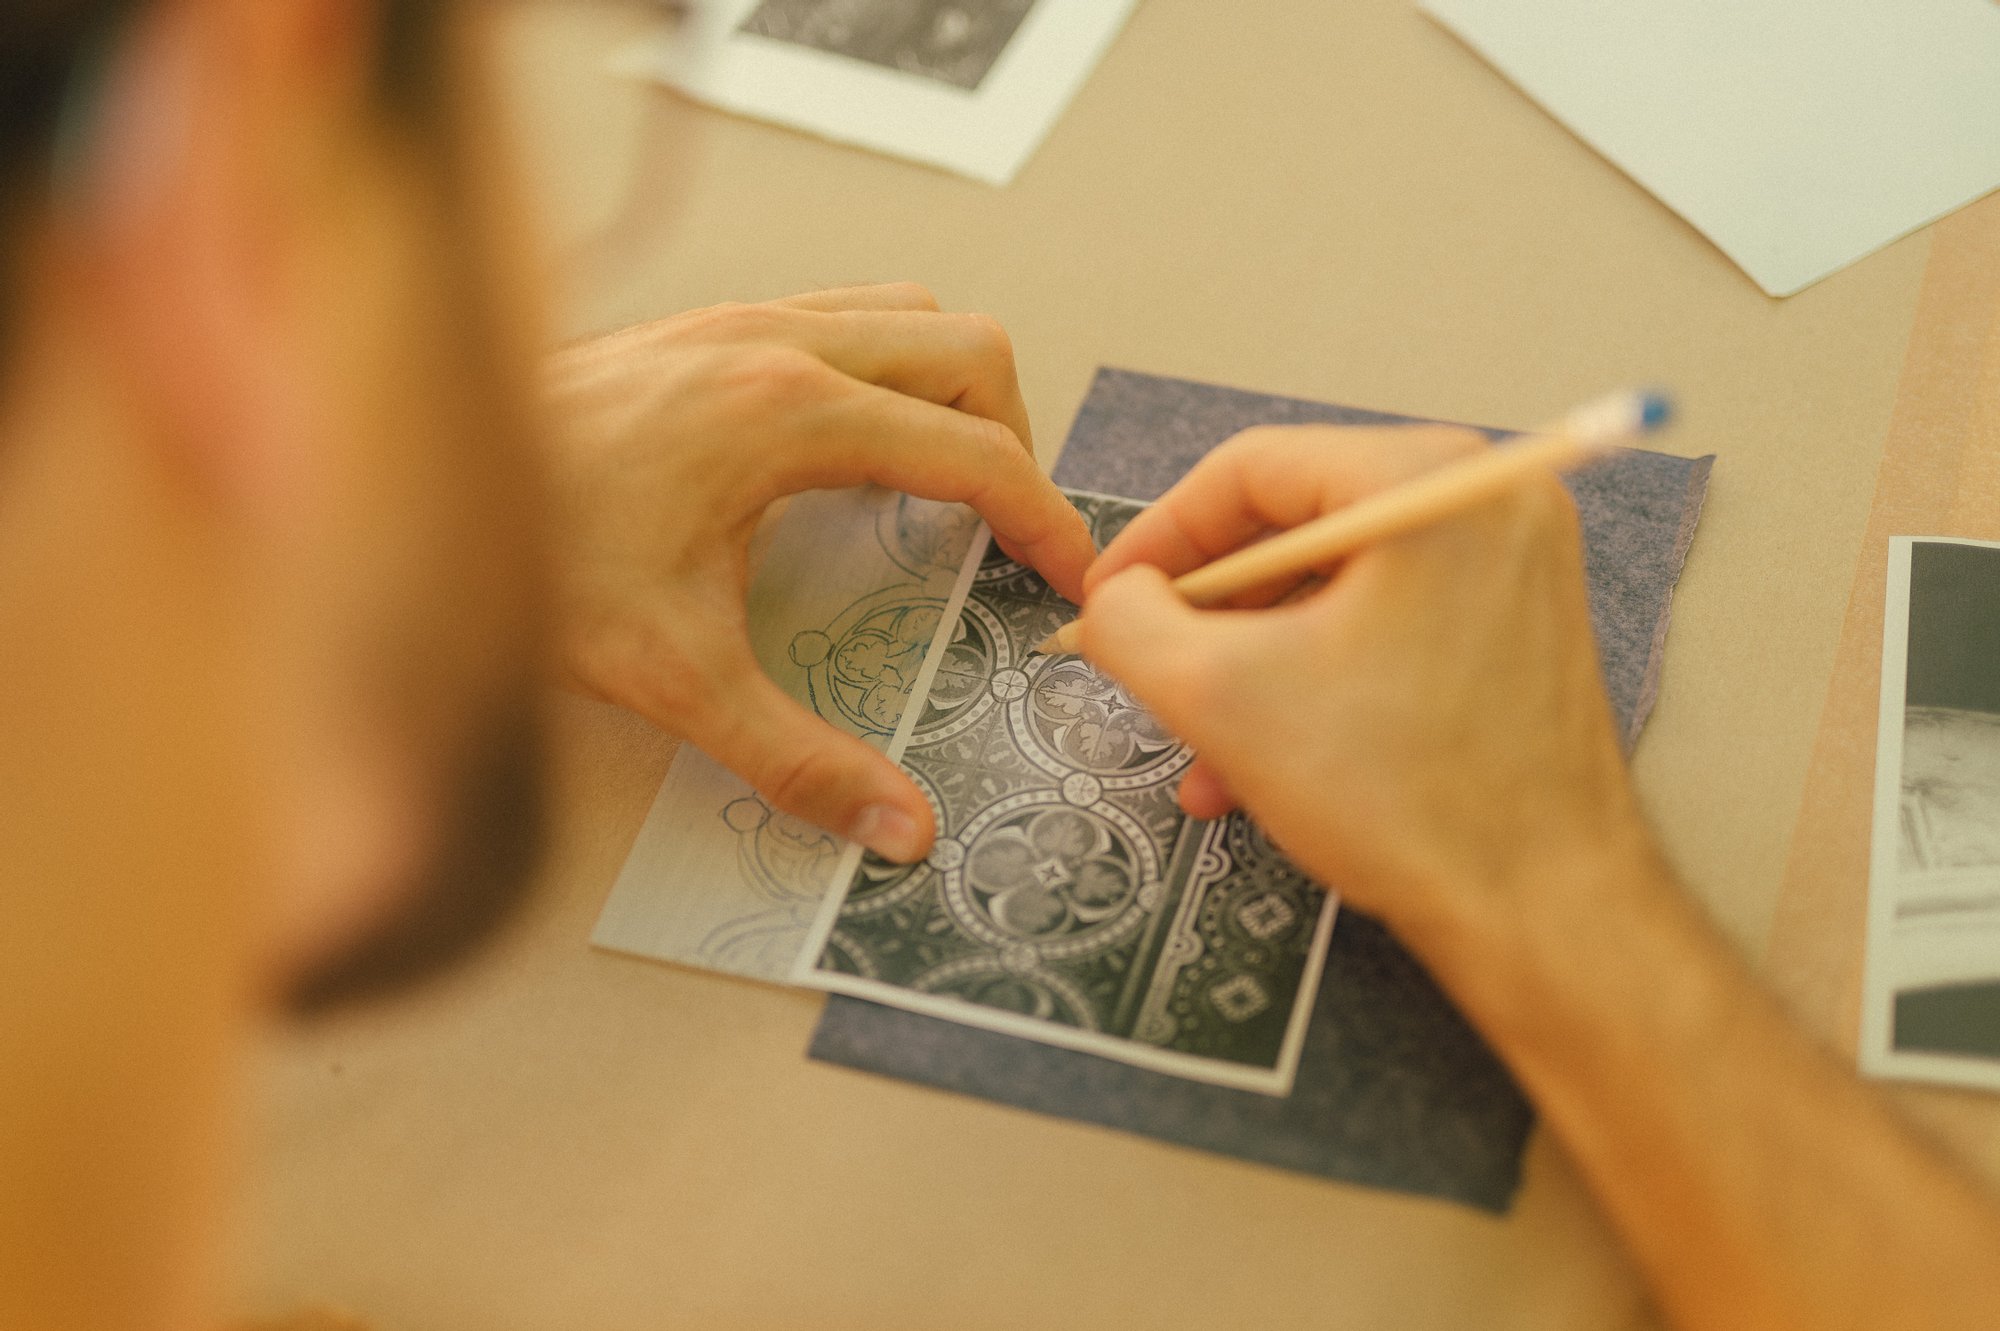 Kolorowa, pozioma fotografia na której widać ujęcie pracy podczas warsztatu z linorytu. Obrócony plecami do obiekty młody mężczyzna rysuje elementy dekoracyjne z pieca kaflowego.